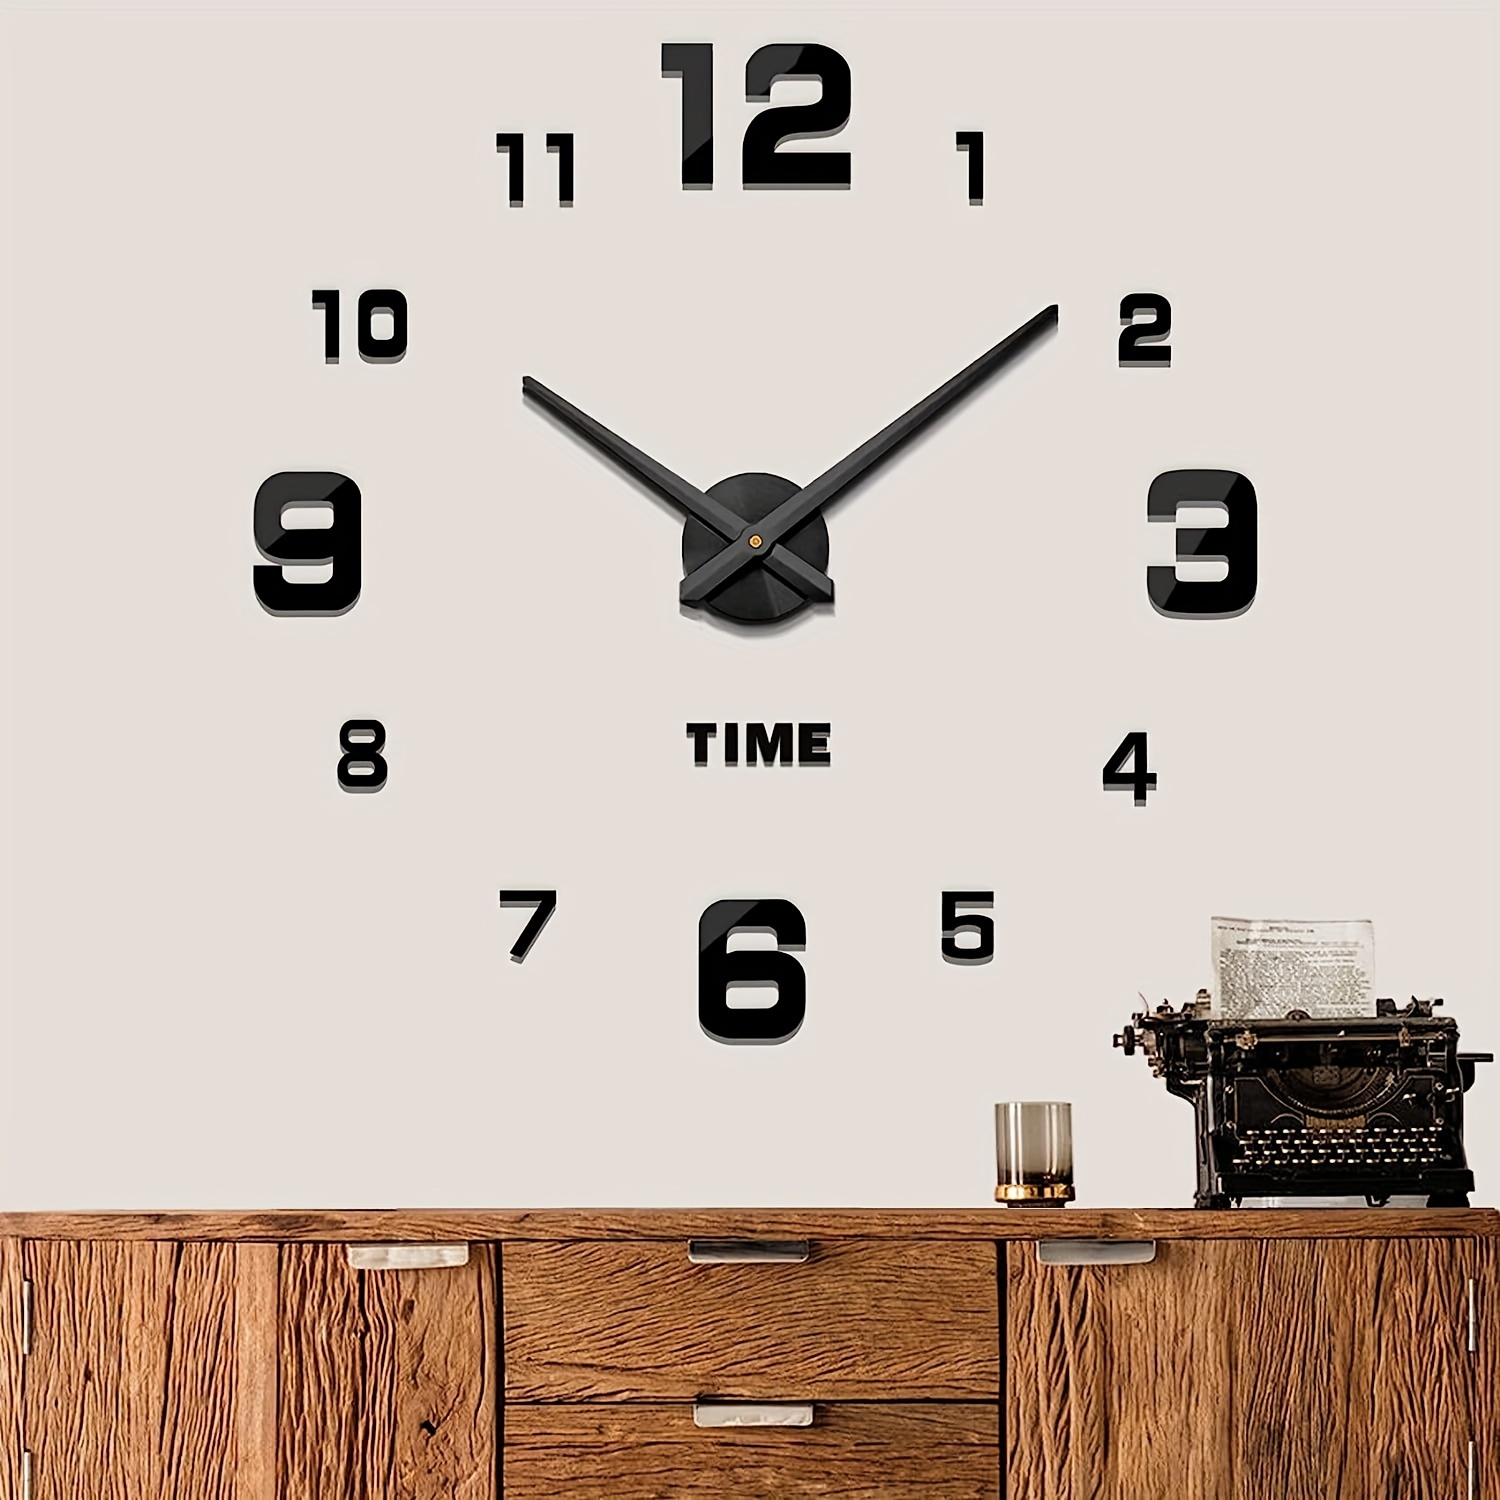 DIY Alfabeto Hogar Reloj De Pared Grande Relojes De Diseño Moderno